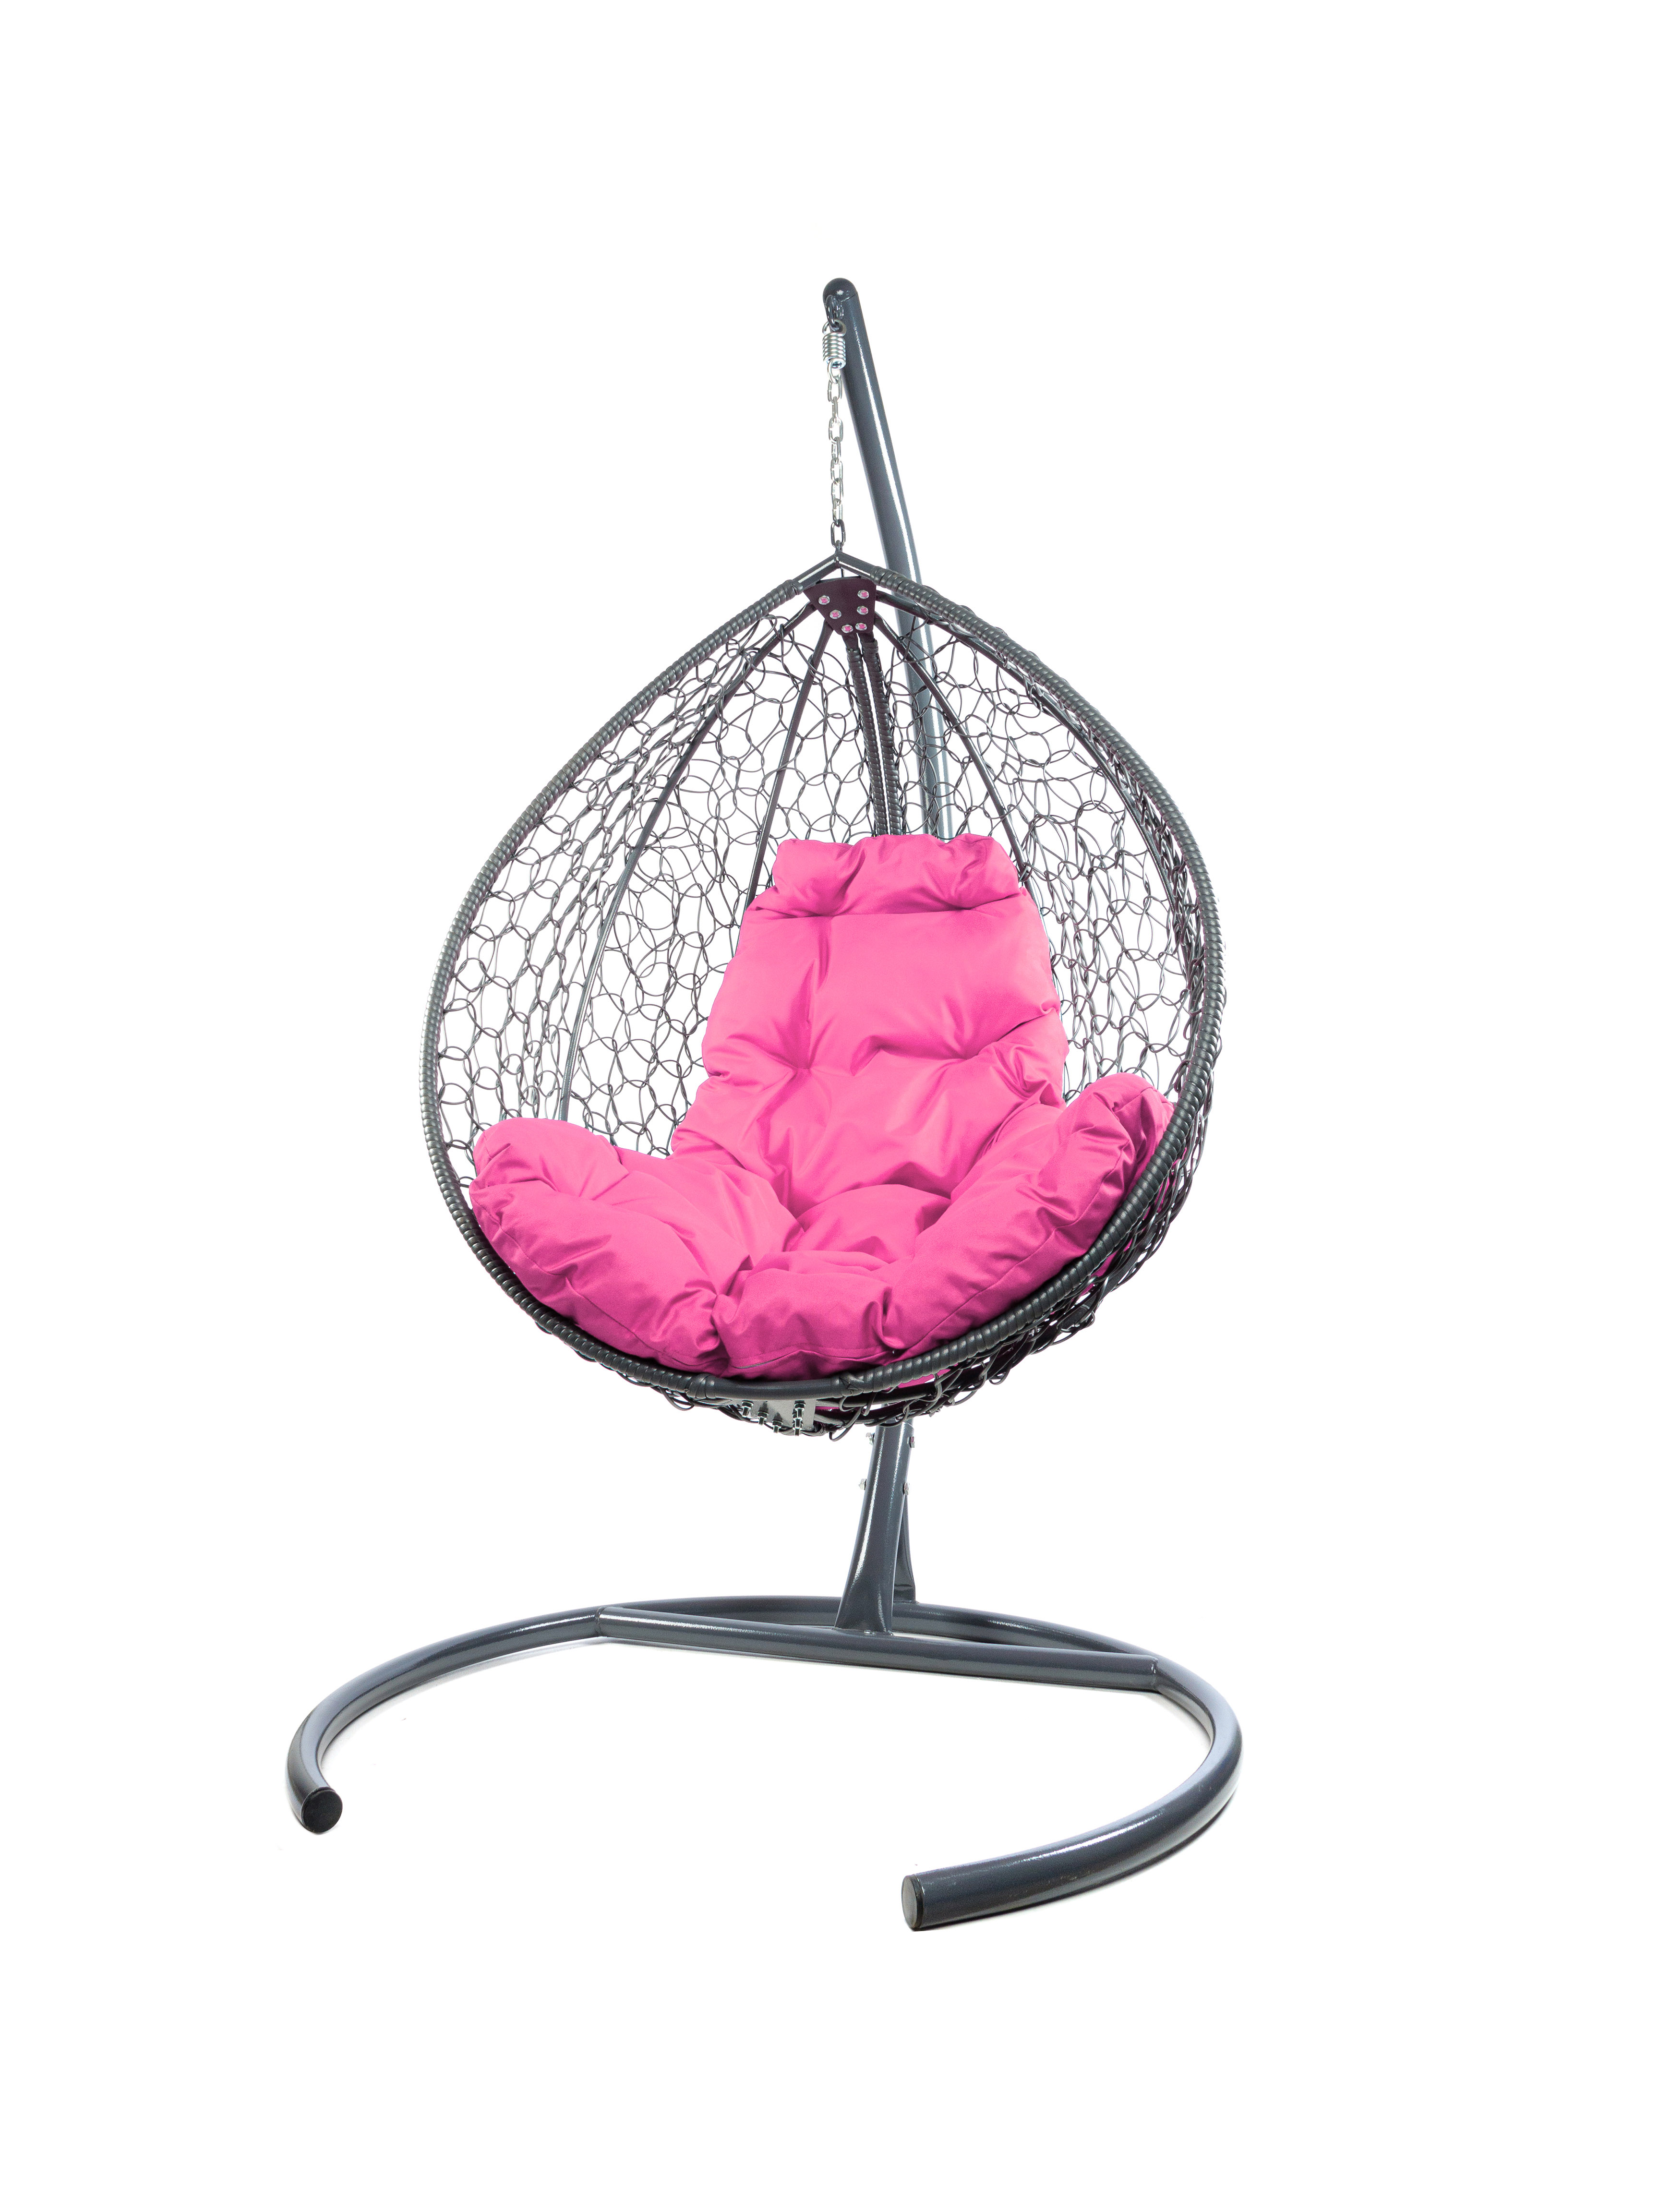 Подвесное кресло серый M-Group Капля складное 11500308 розовая подушка